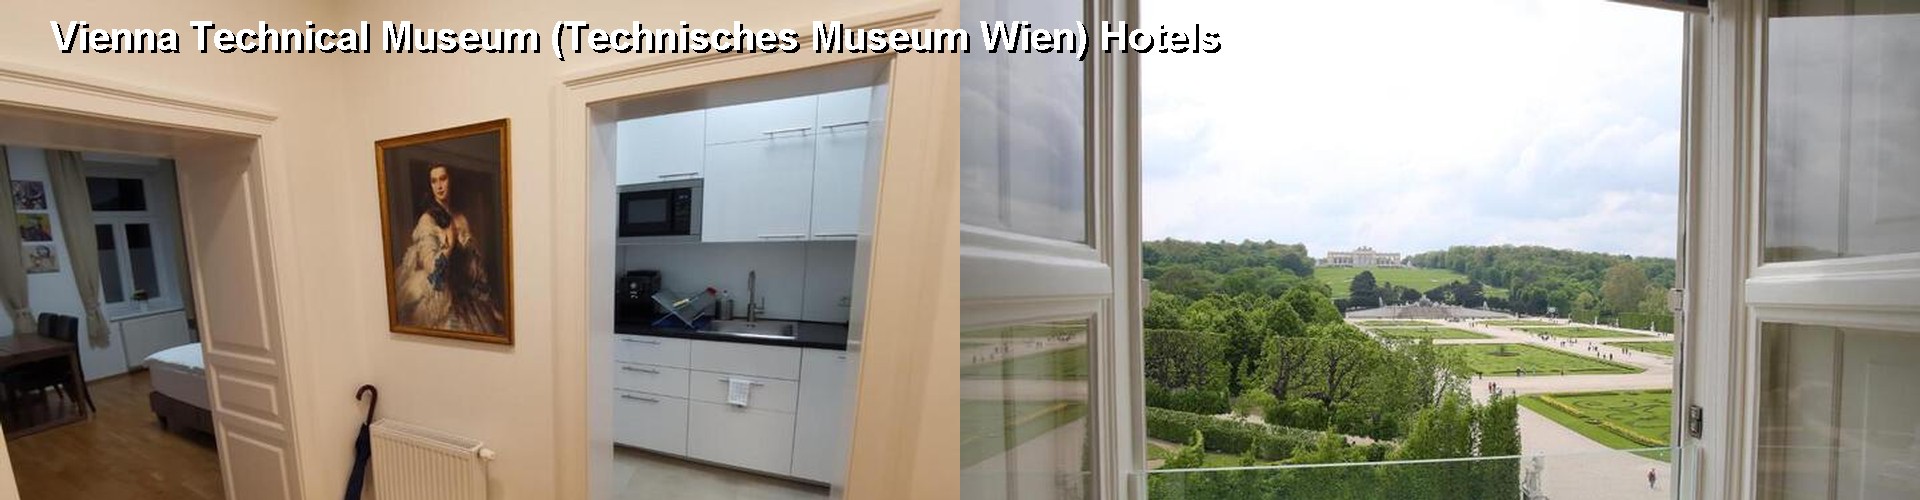 5 Best Hotels near Vienna Technical Museum (Technisches Museum Wien)